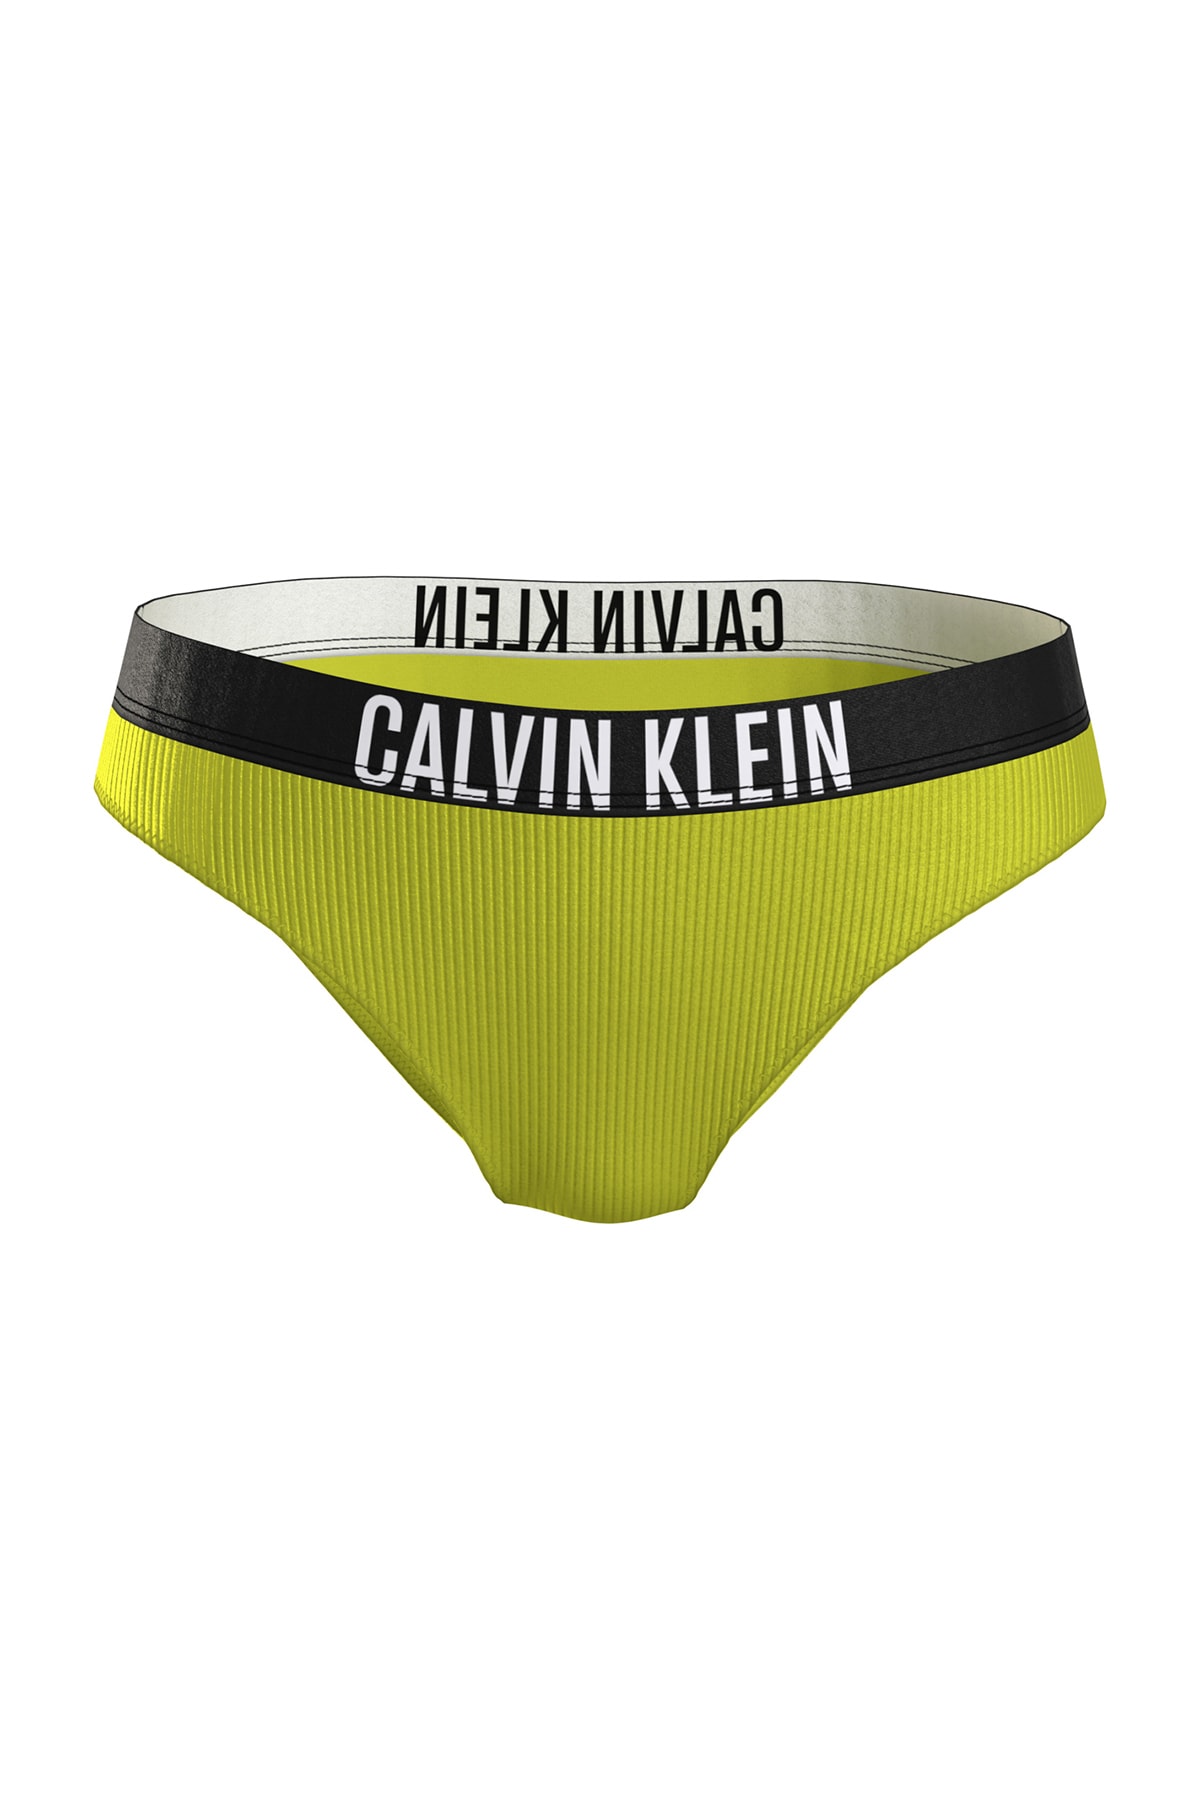 Calvin Klein Bikini-Hose Gelb Mit Slogan Fast ausverkauft